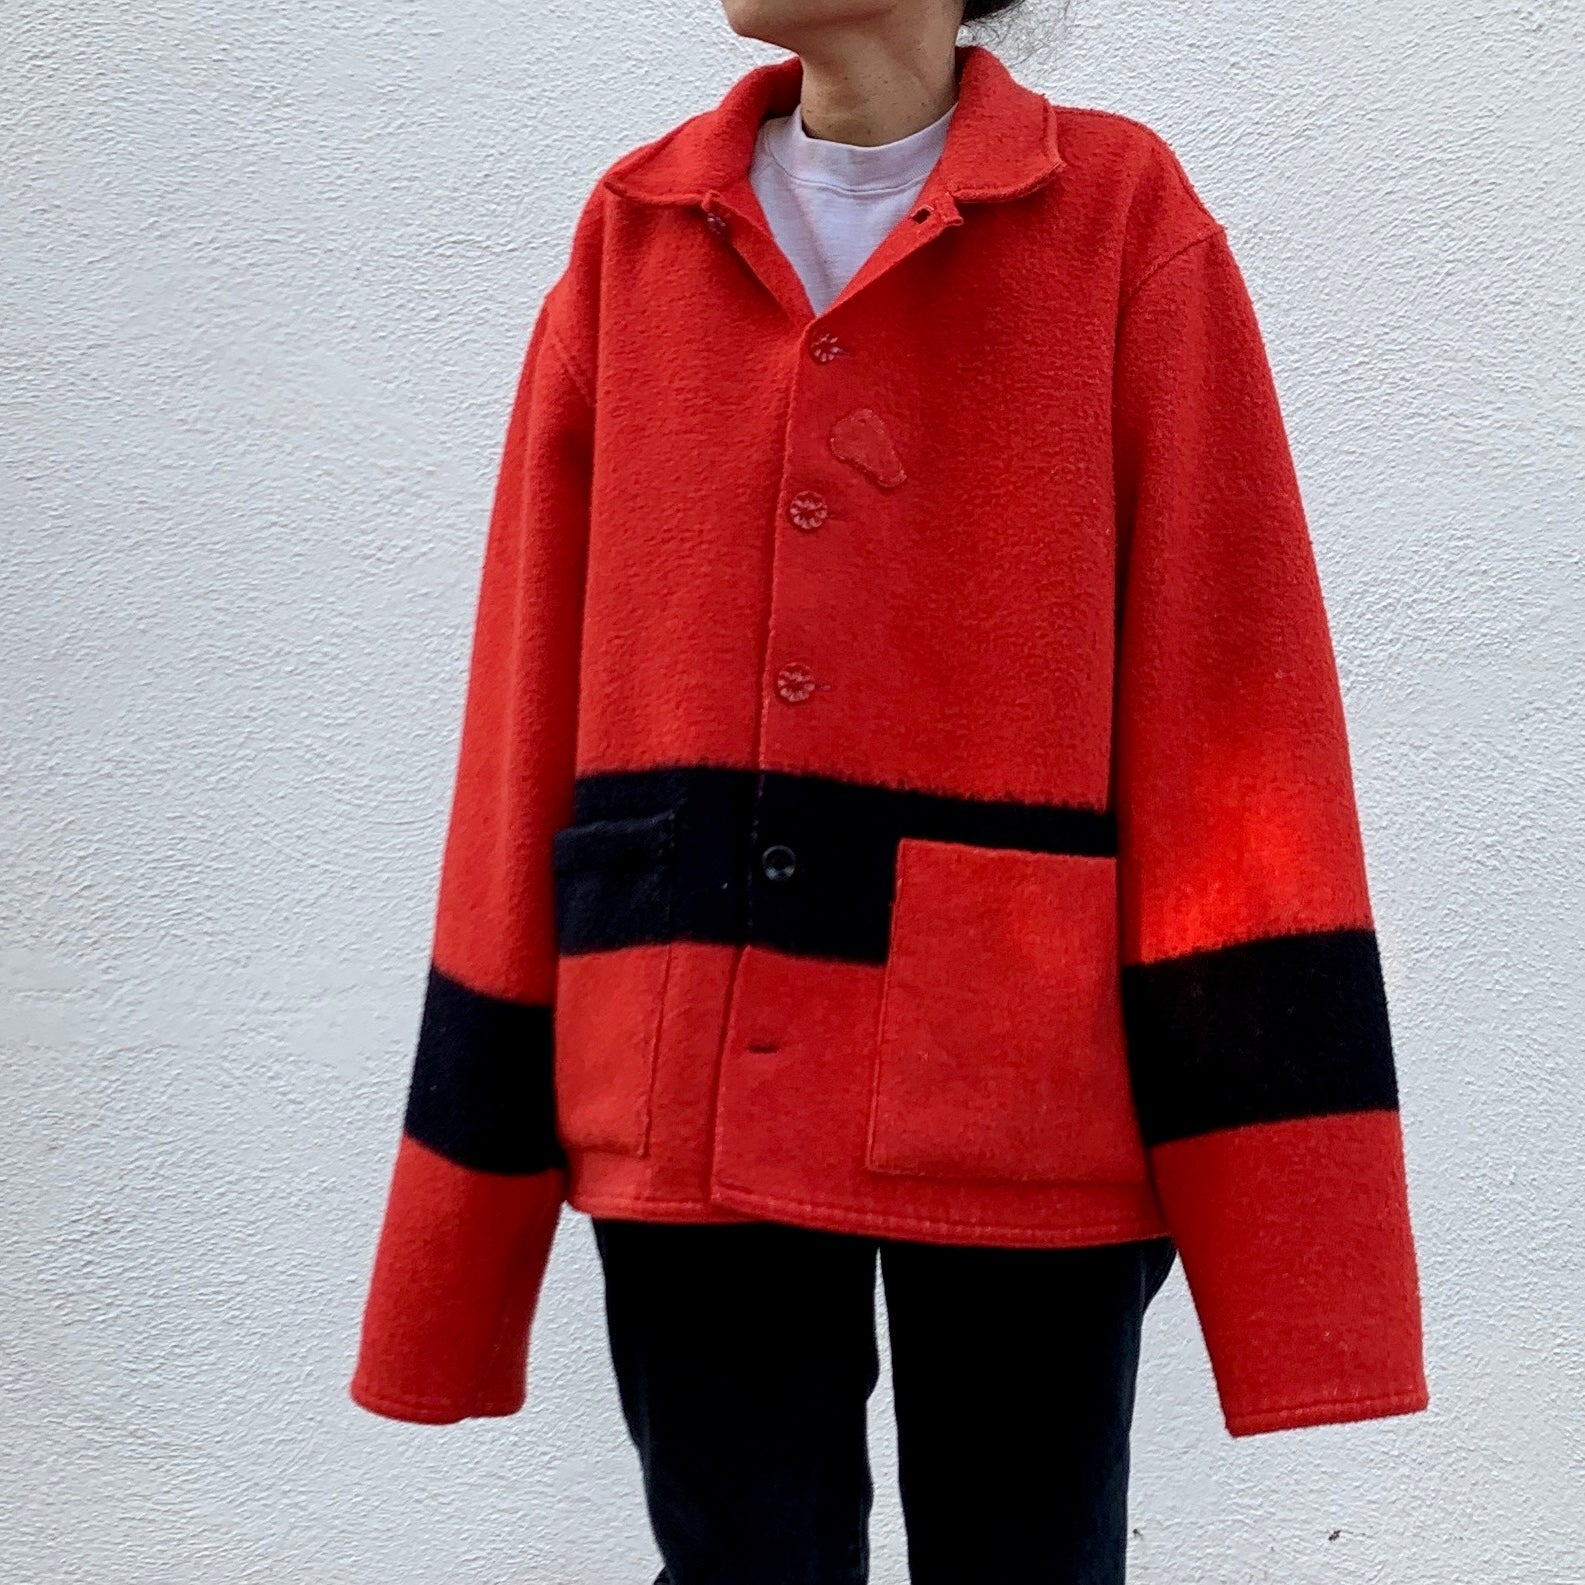 M/L Blanket Jacket - Red/Black Stripe